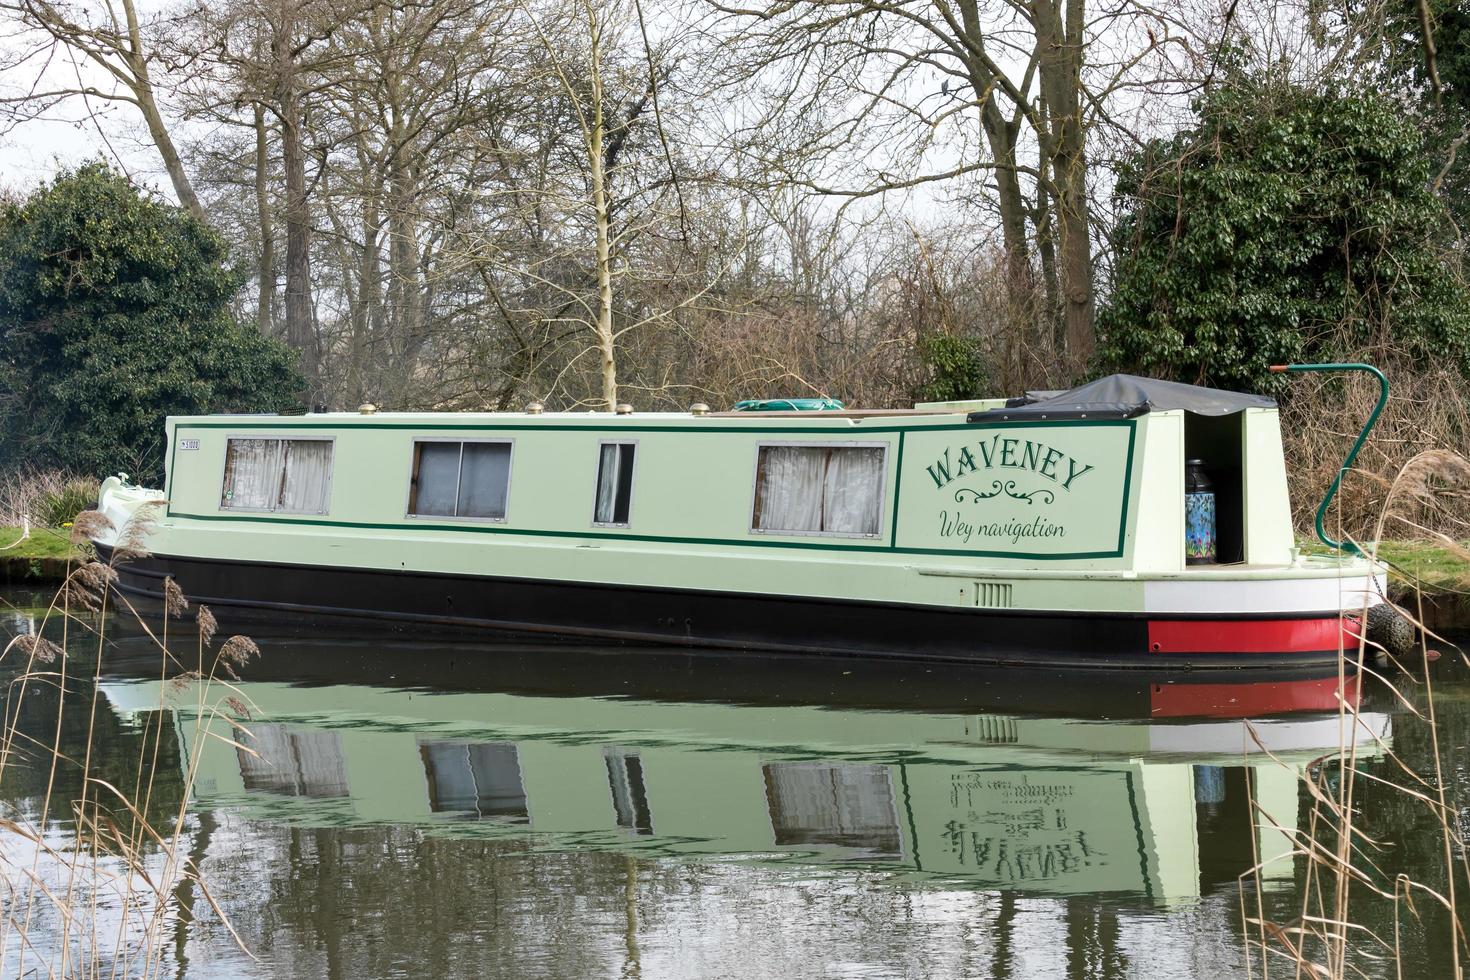 River Way, Surrey, UK, 2015. bateau étroit sur la rivière wey navigations canal photo